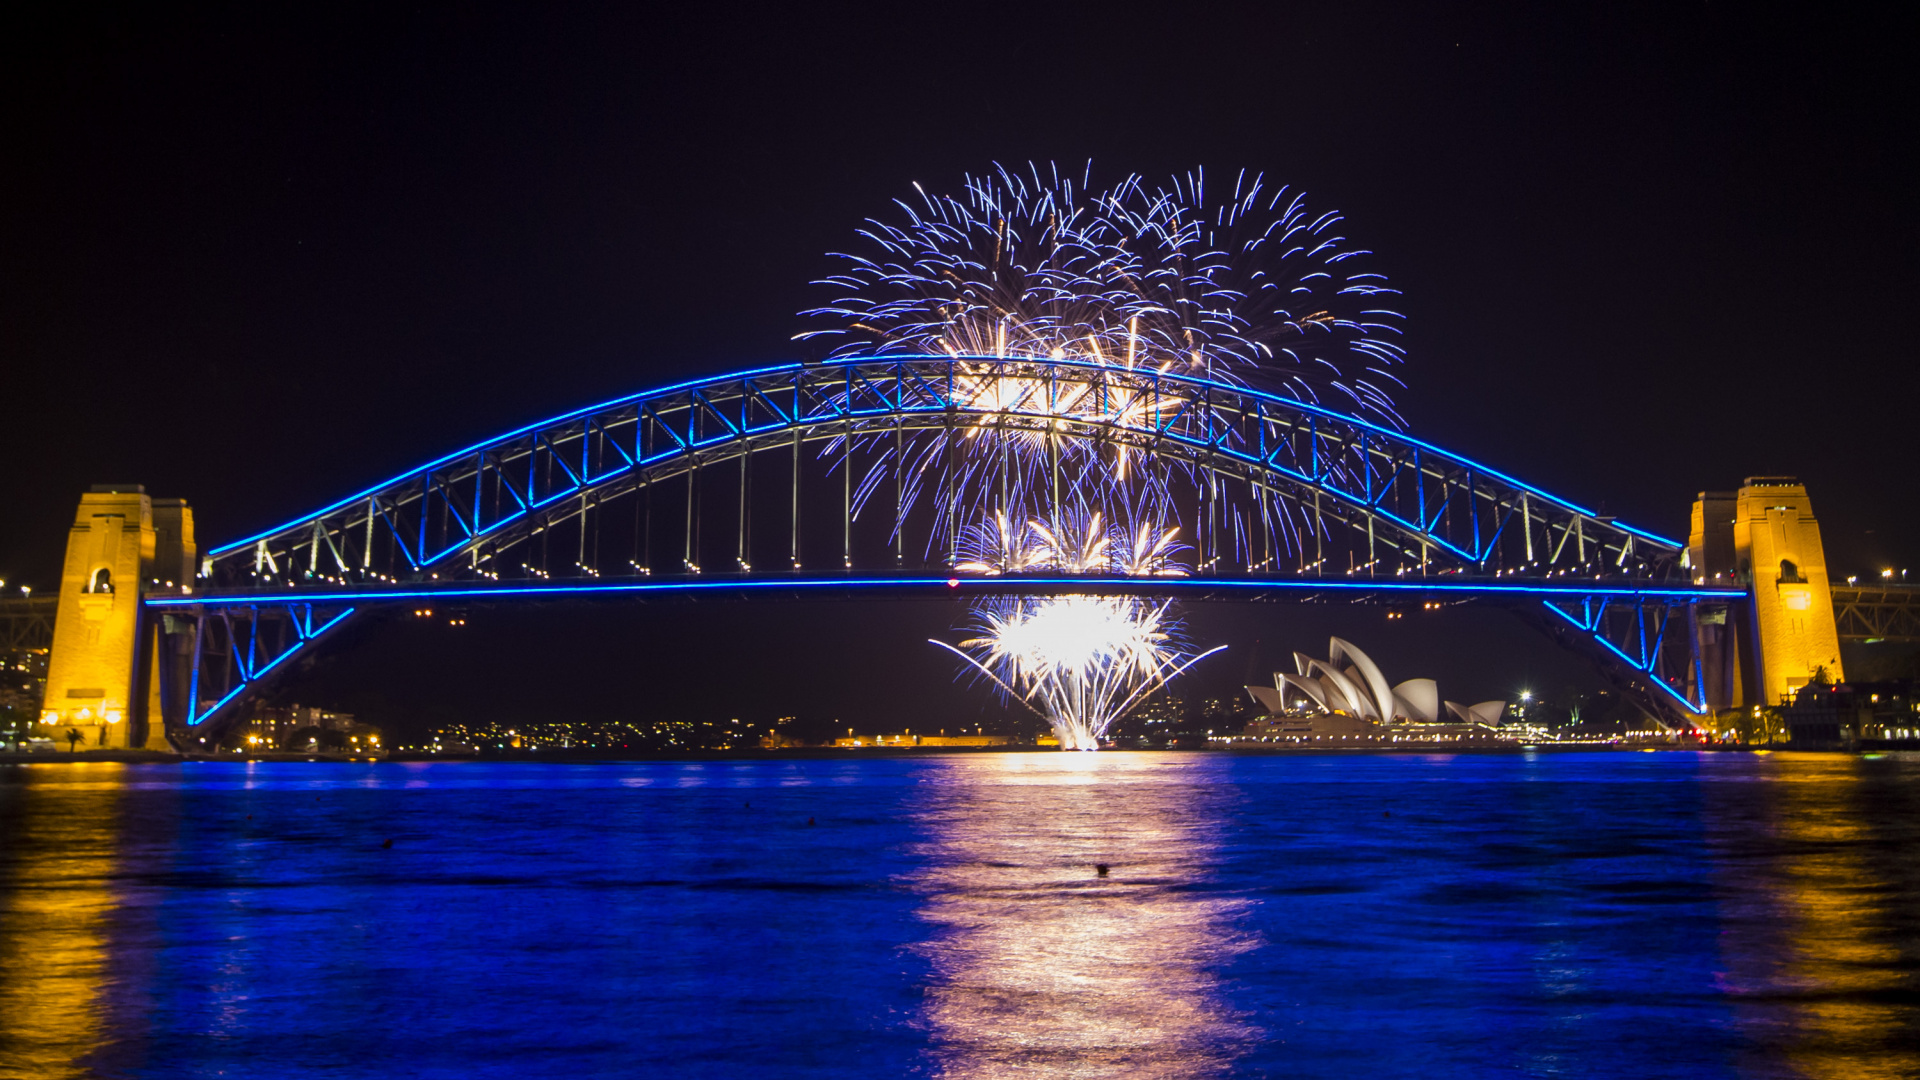 悉尼海港大桥, 悉尼歌剧院, 反射, 里程碑, 旅游景点 壁纸 1920x1080 允许